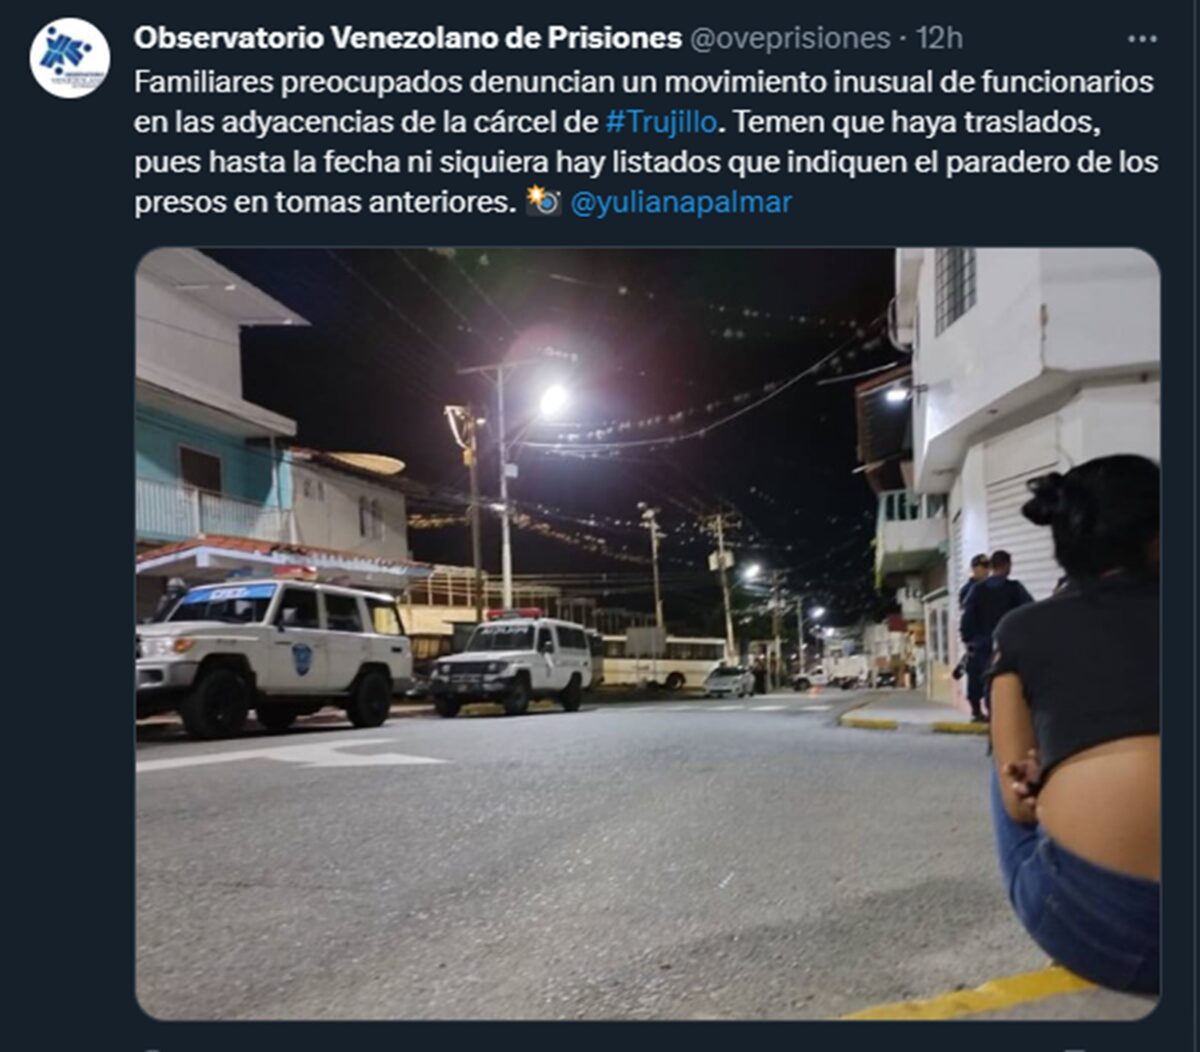 OVP informó que funcionarios de seguridad tomaron el Internado Judicial de Trujillo